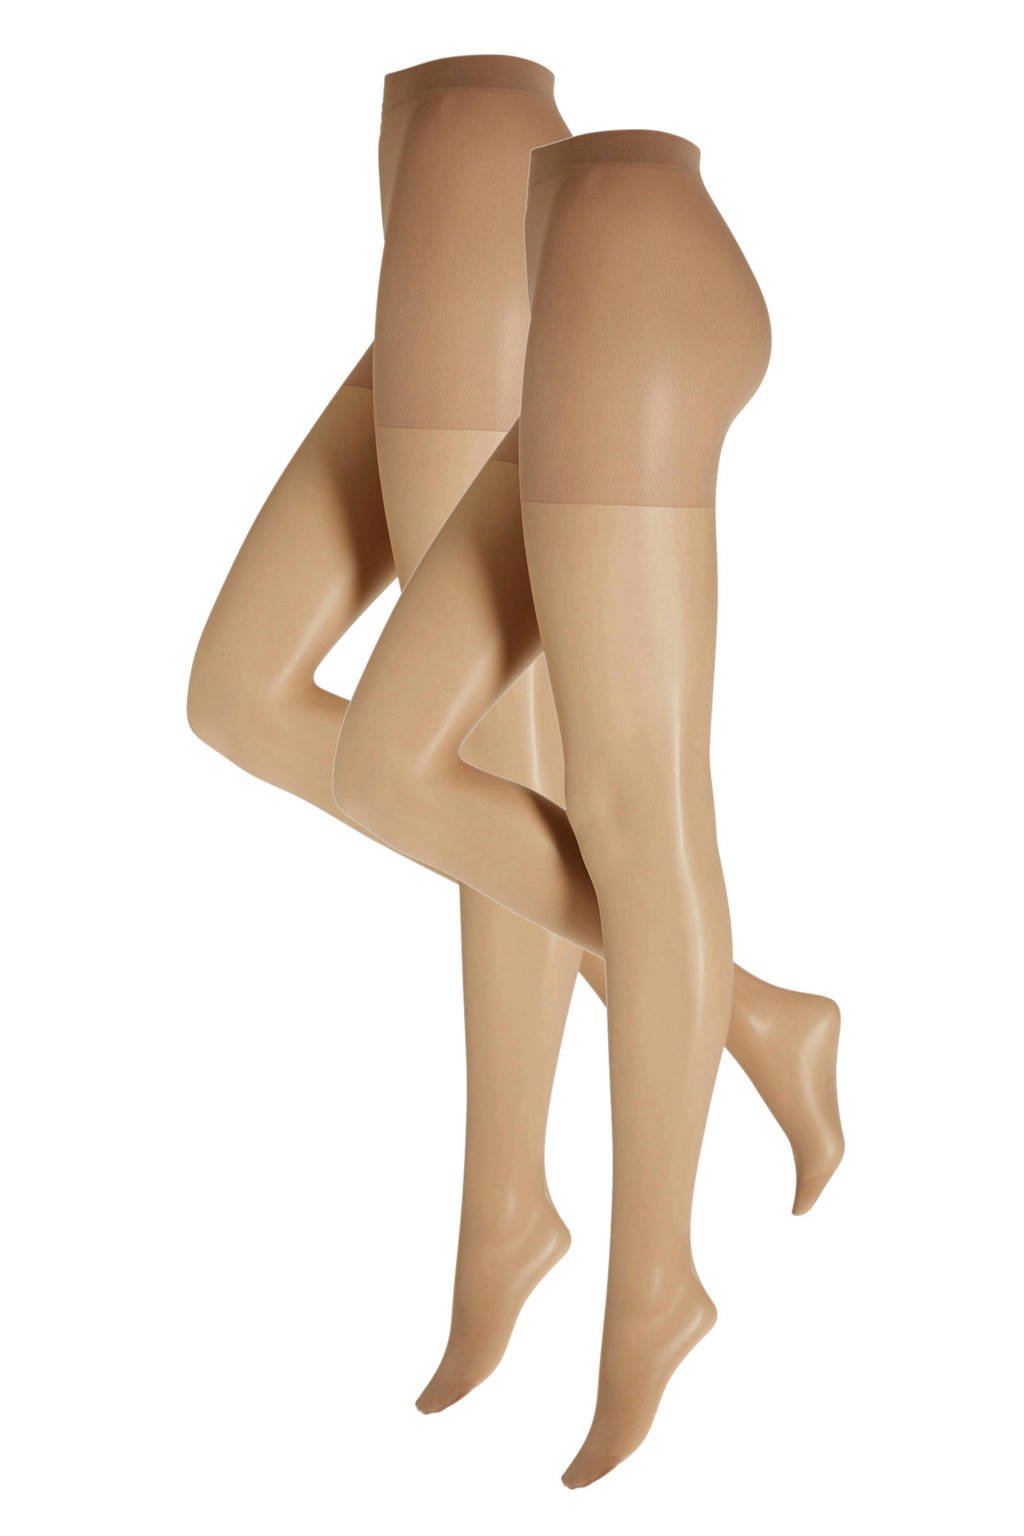 whkmp's own corrigerende panty 20 denier - set van 2 nude, Nude